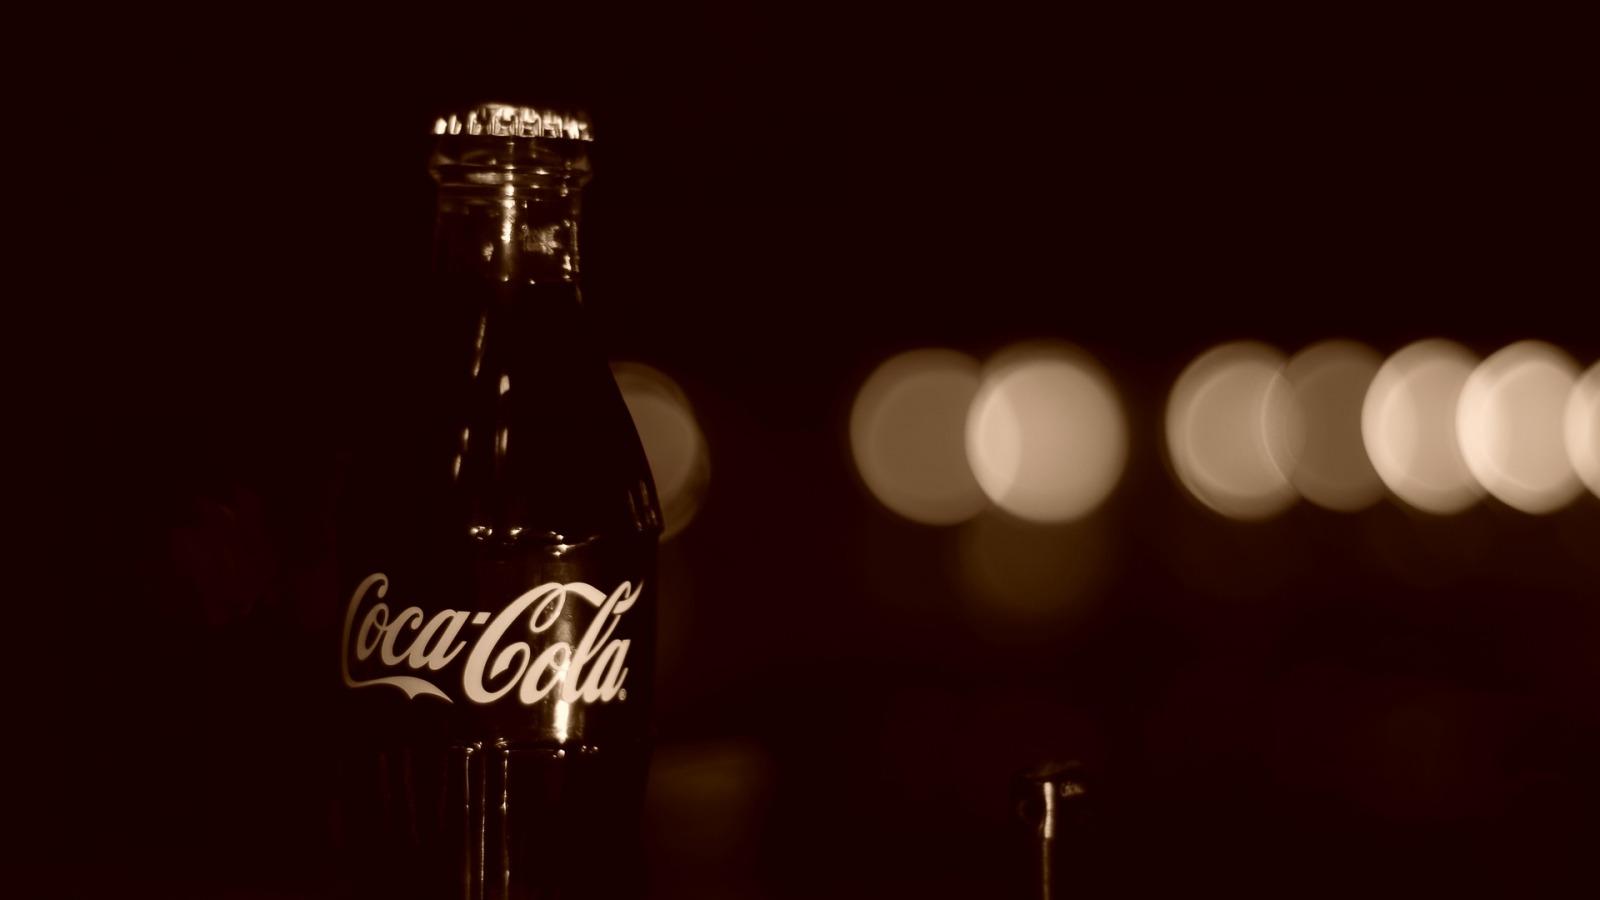 Coca Cola Image for PC HD Wallpaper